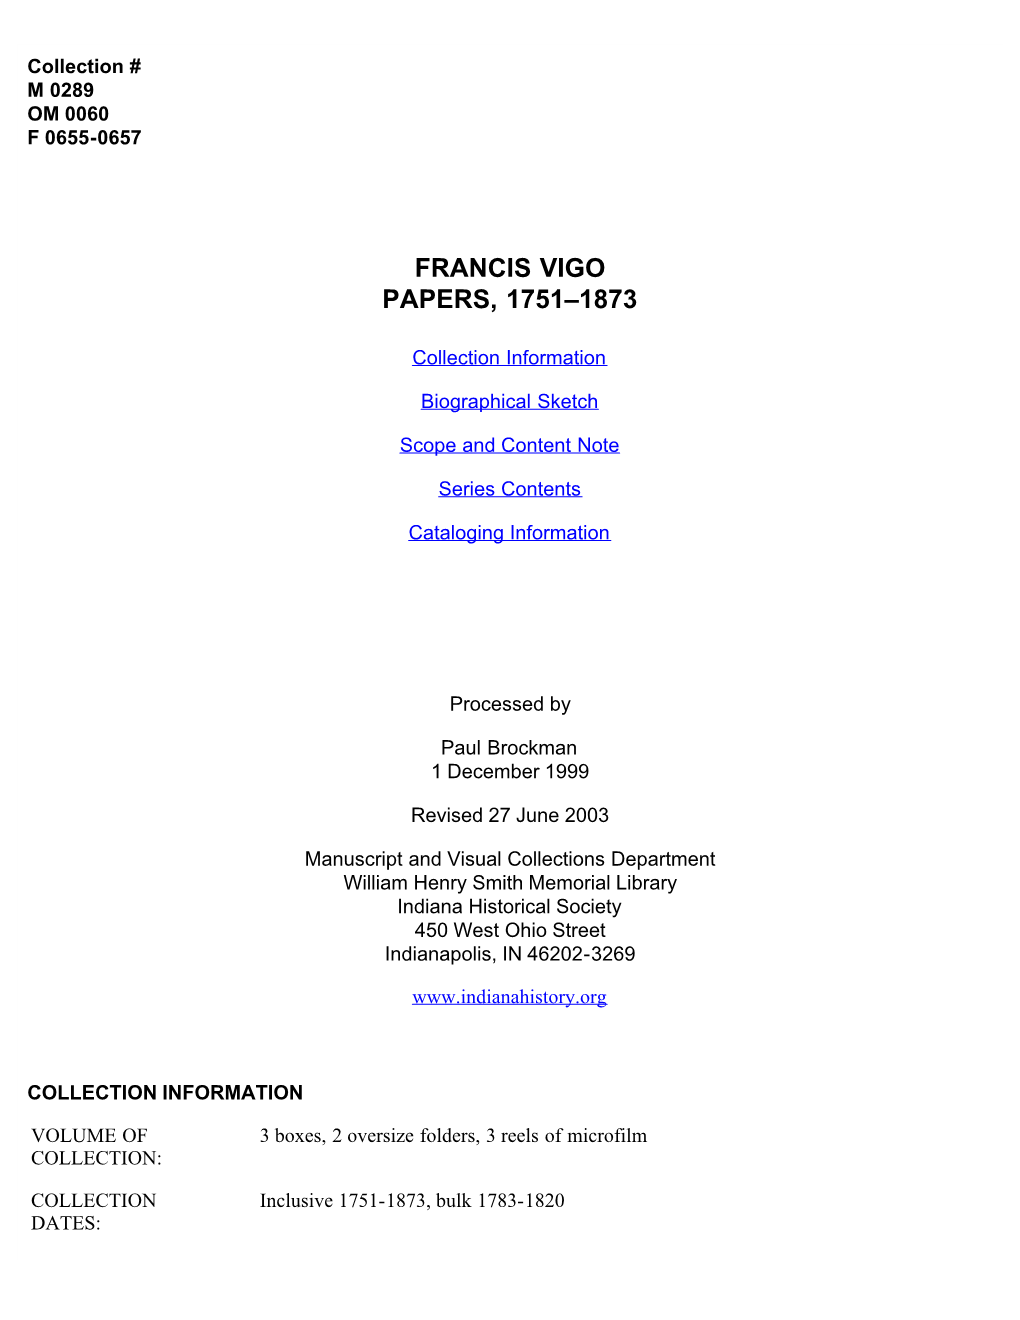 Francis Vigo Papers, 1751-1873